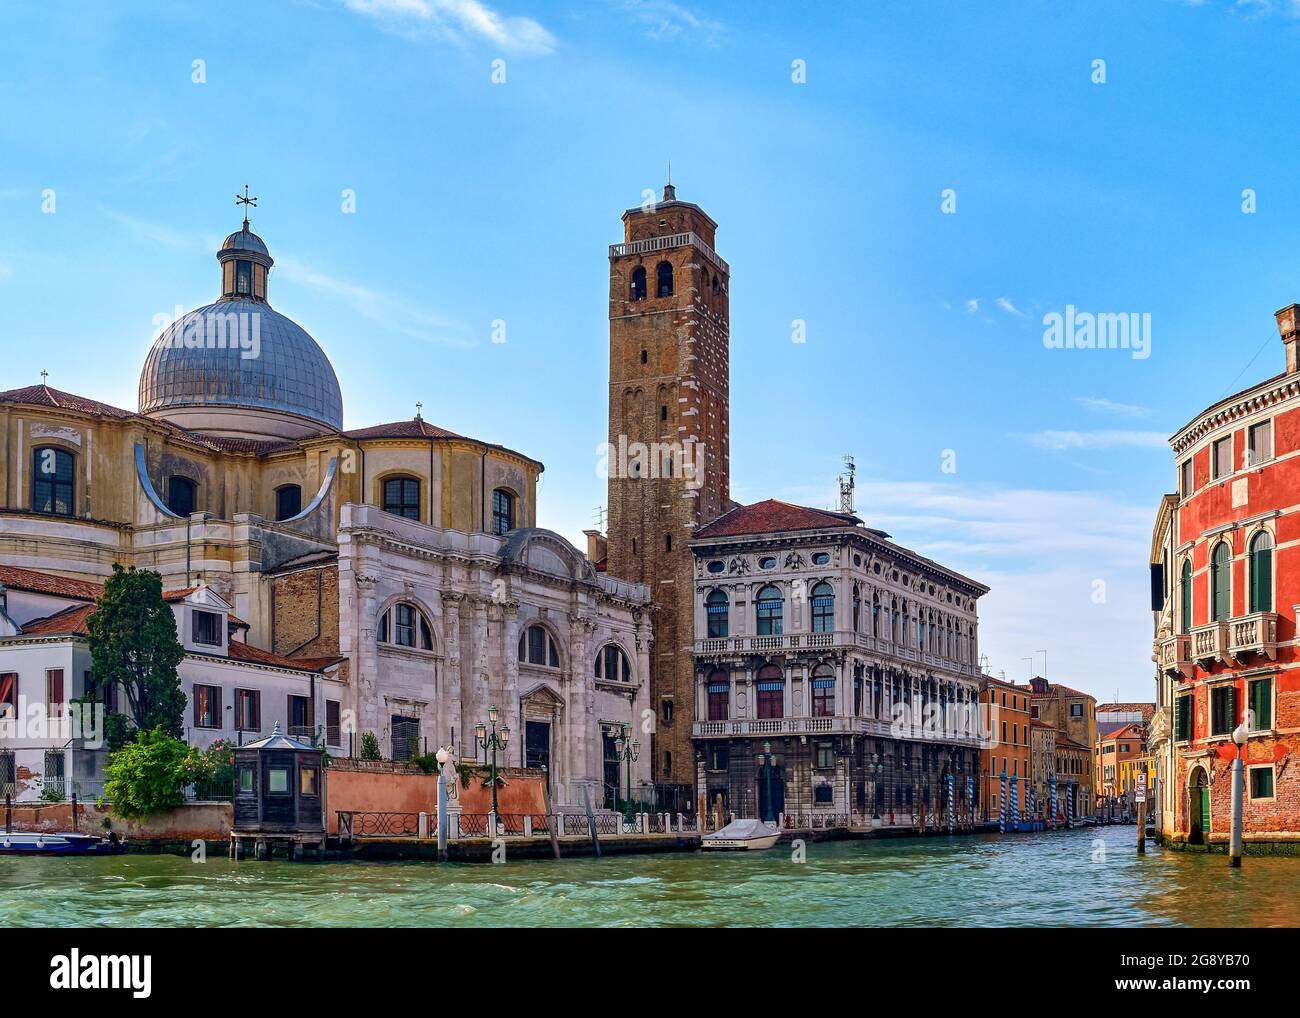 Schöne Aussicht auf die Kirche des Hl. Hieronymus oder San Gemeria am Canale Grande, Venedig, Italien. Prominente Wahrzeichen Gehäuse bleibt von St. Lucy, bei Tageslicht Stockfoto